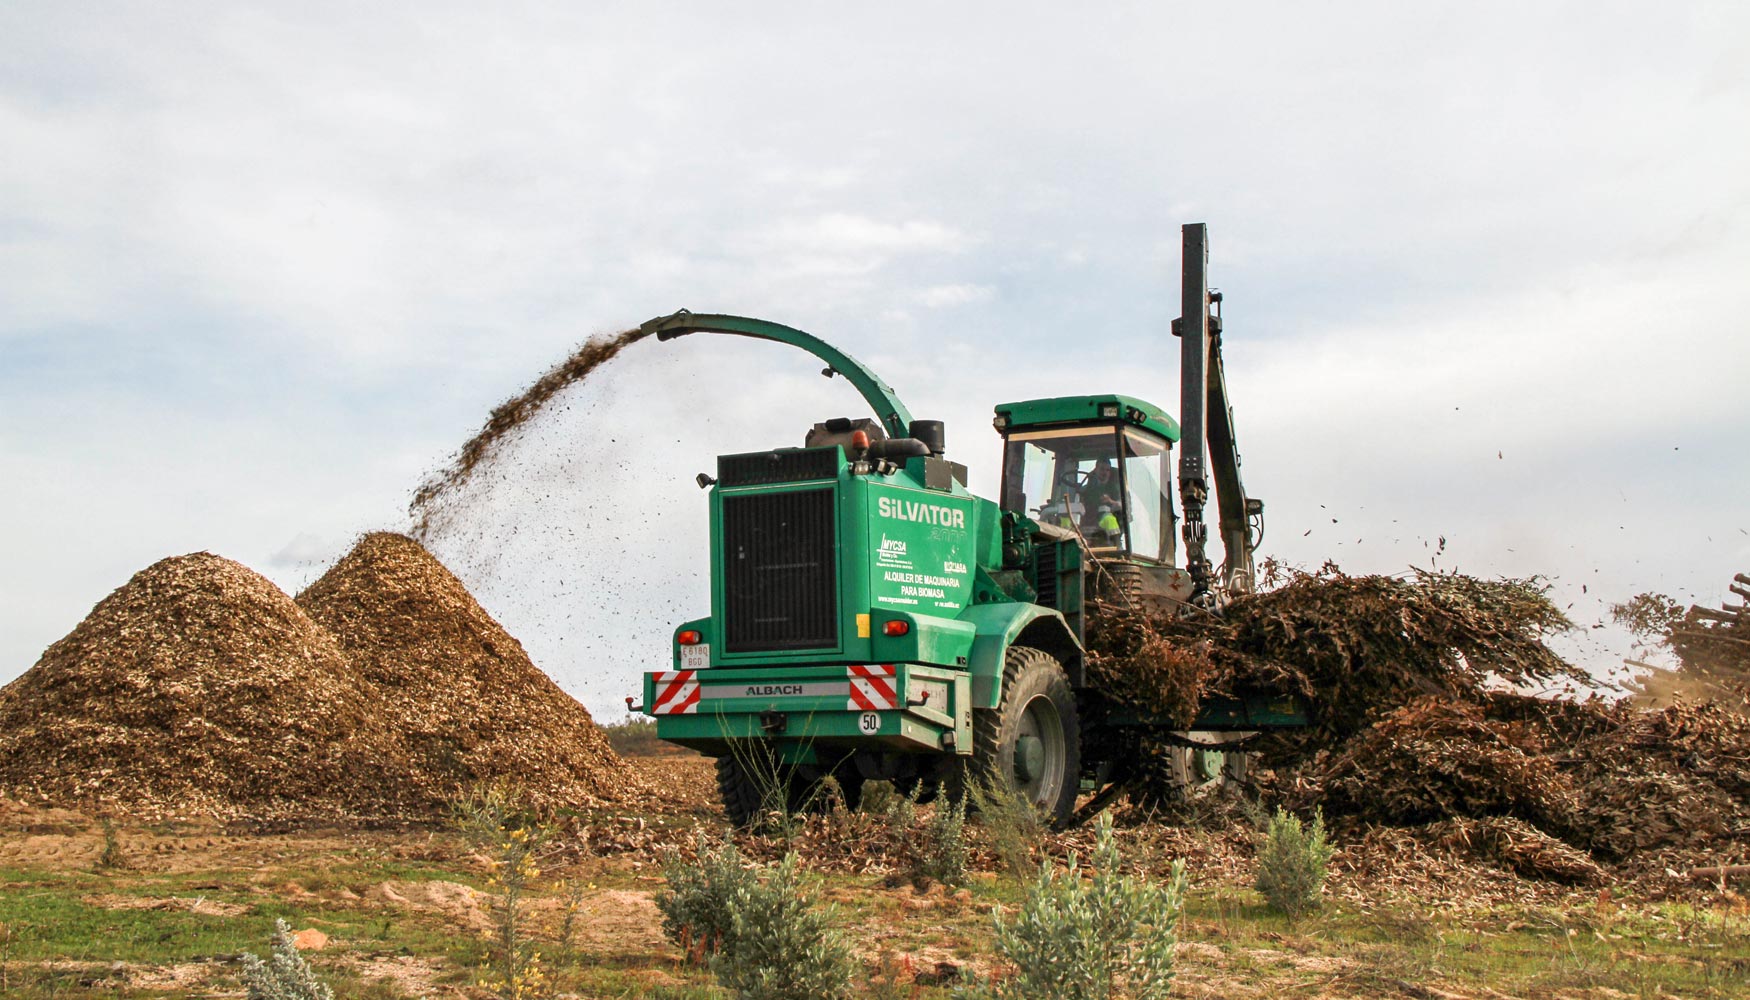 Astillado de restos forestales para biomasa